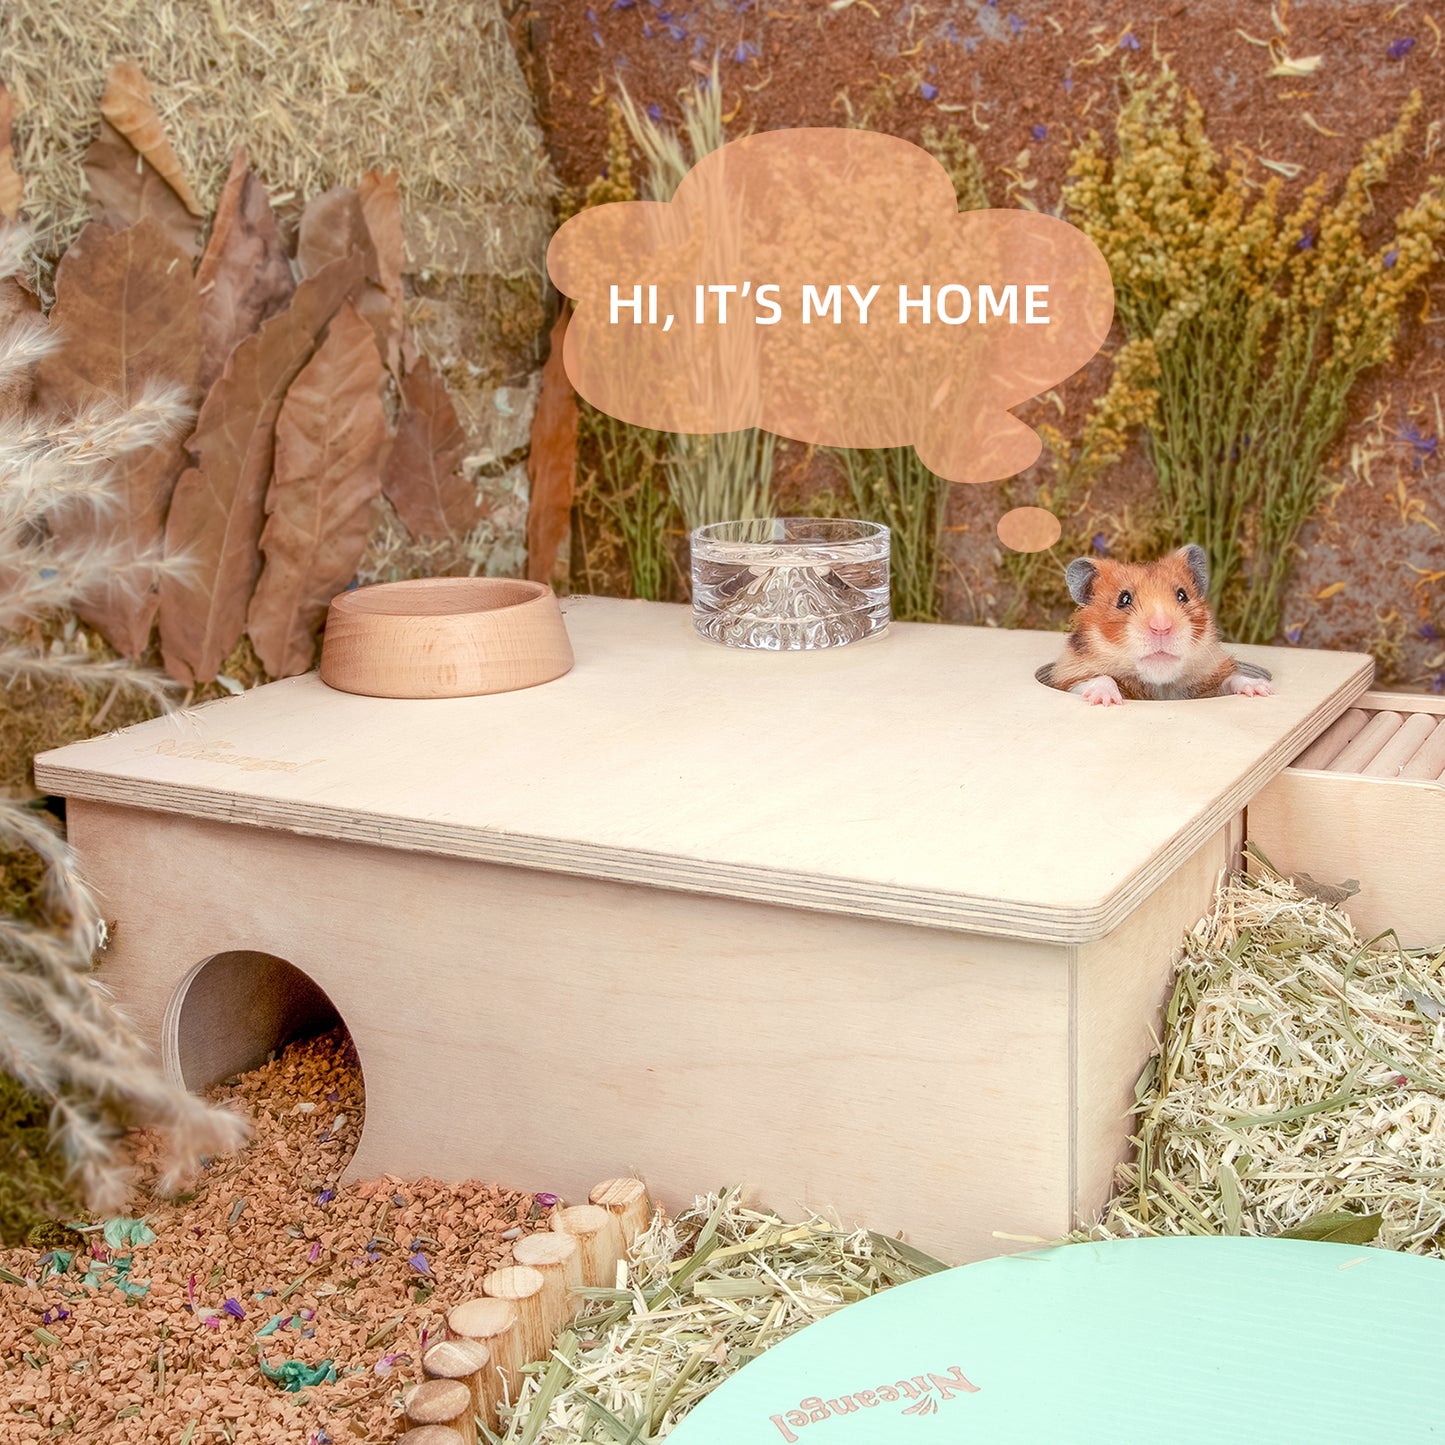 Niteangel 3-Chamber Hideout For Hamsters & Mice - Niteangel Pet CA